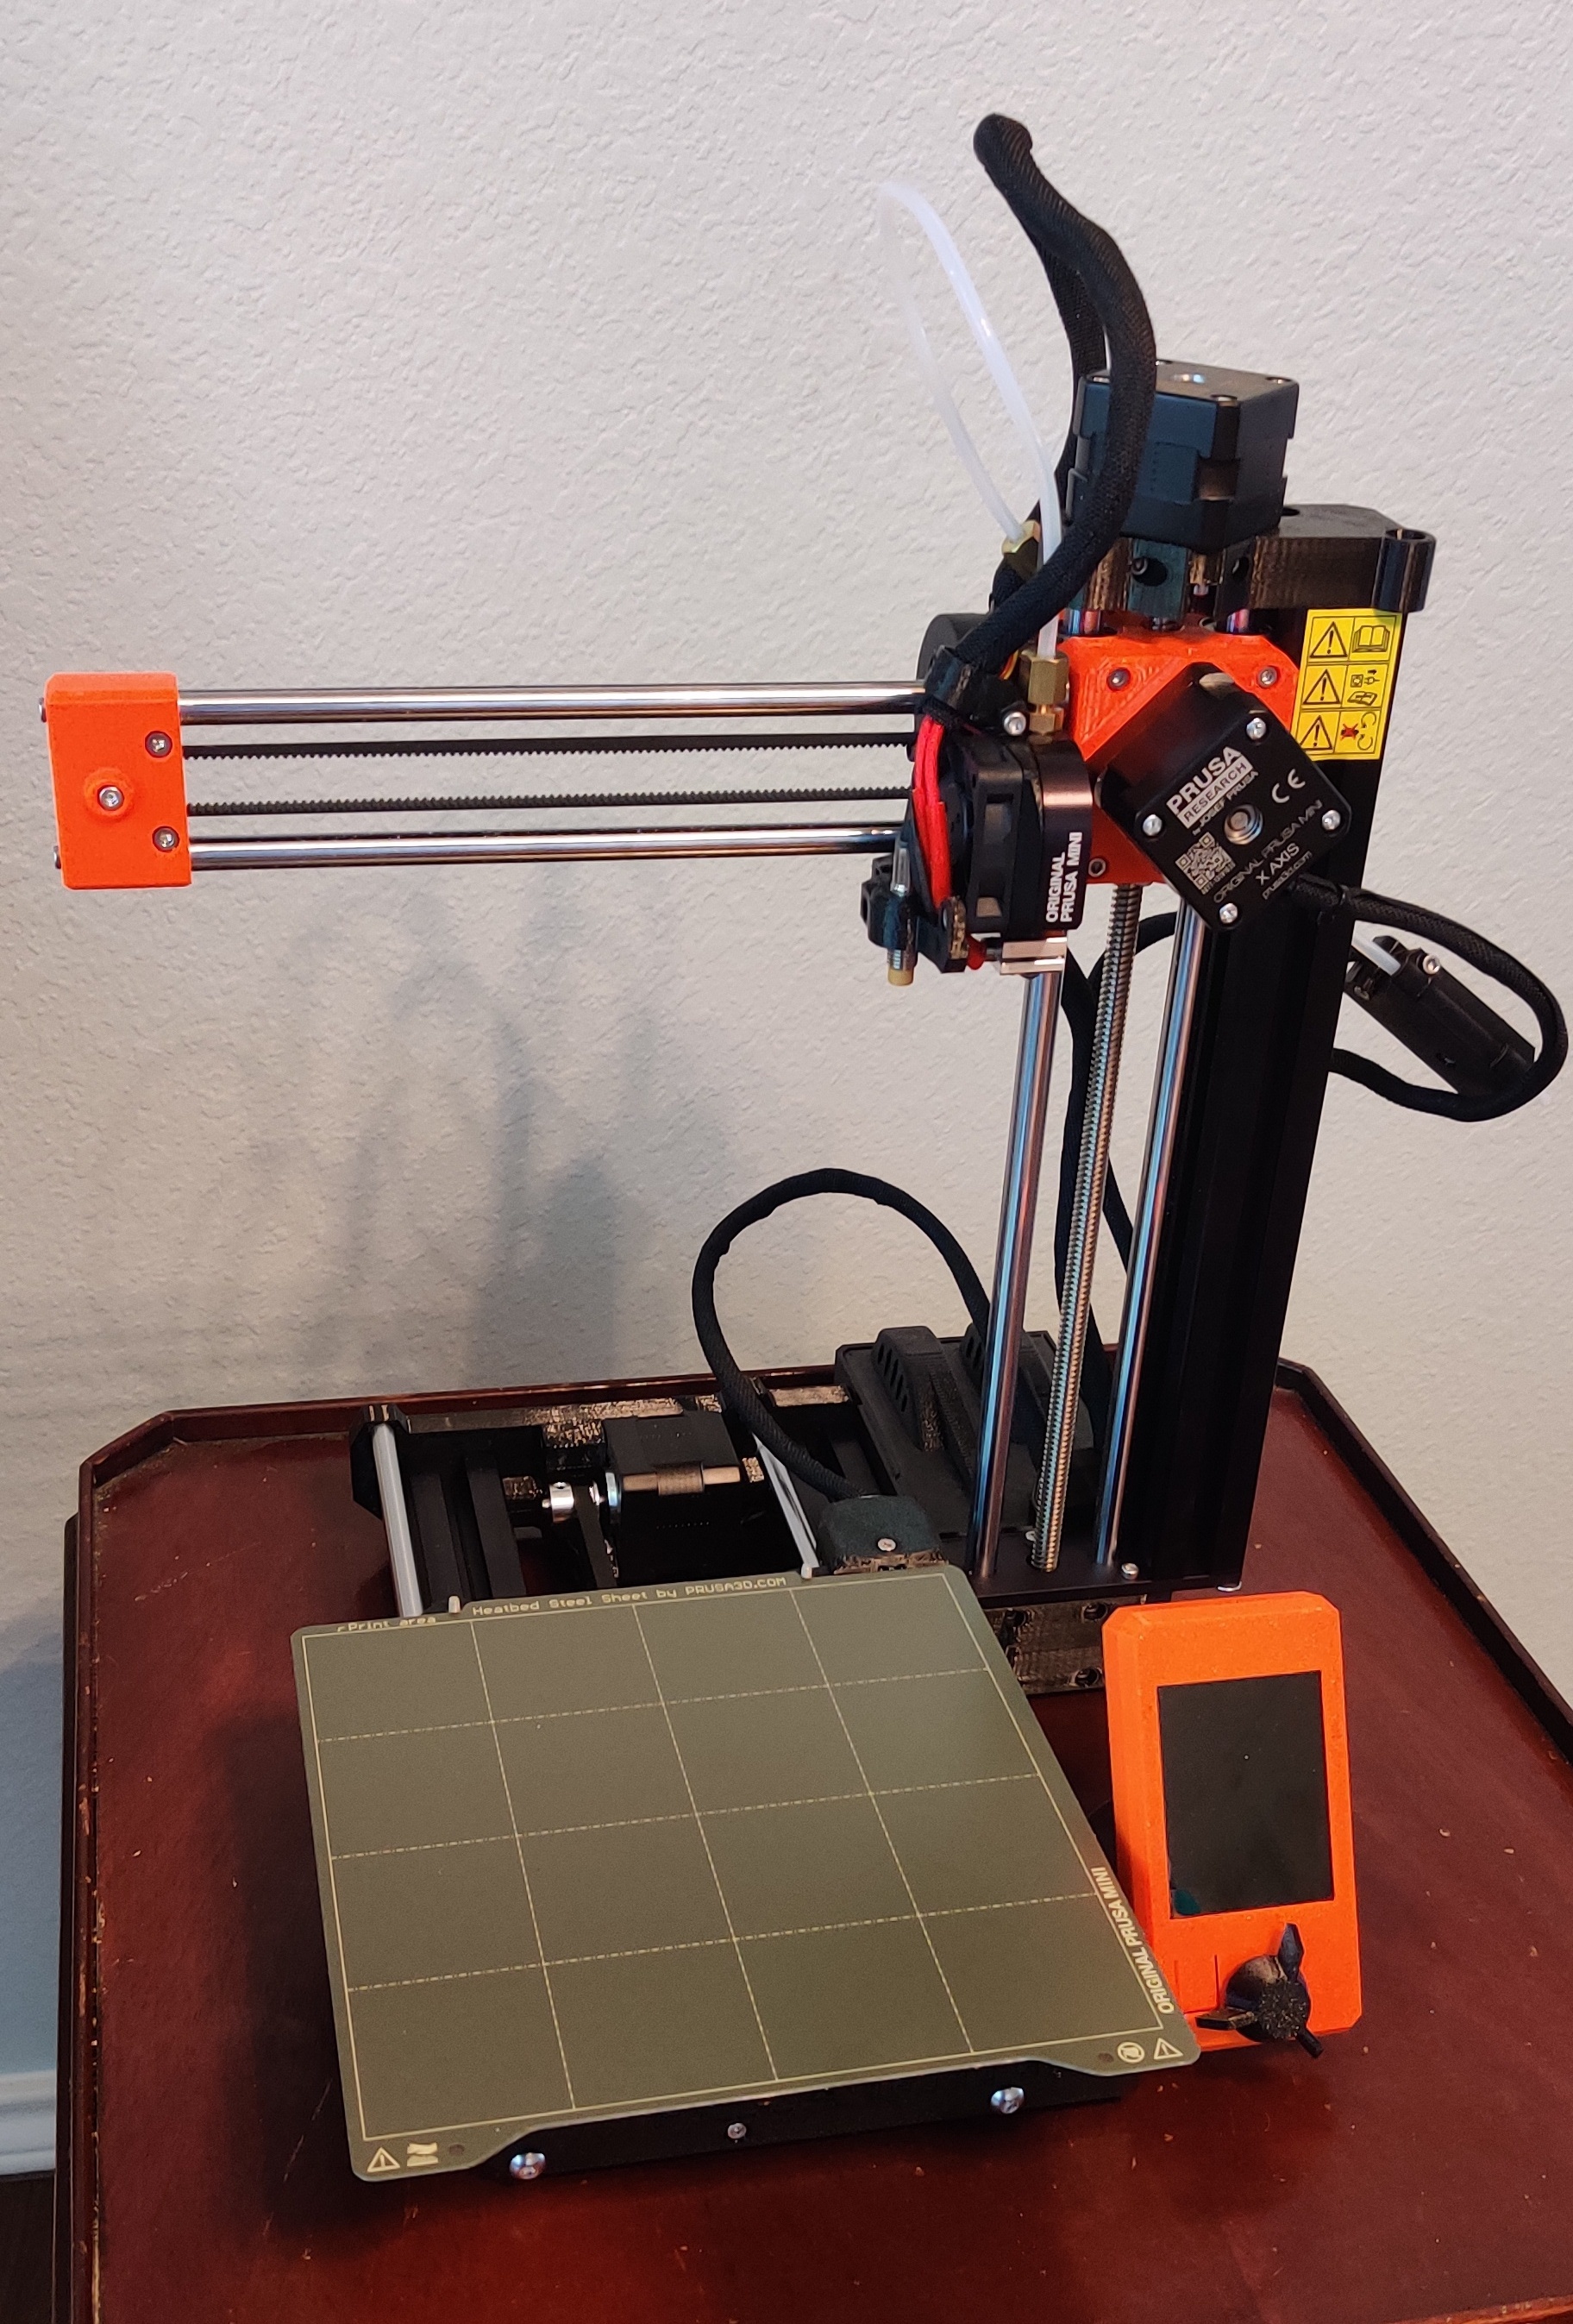 Assembled Prusa Mini 3D printer